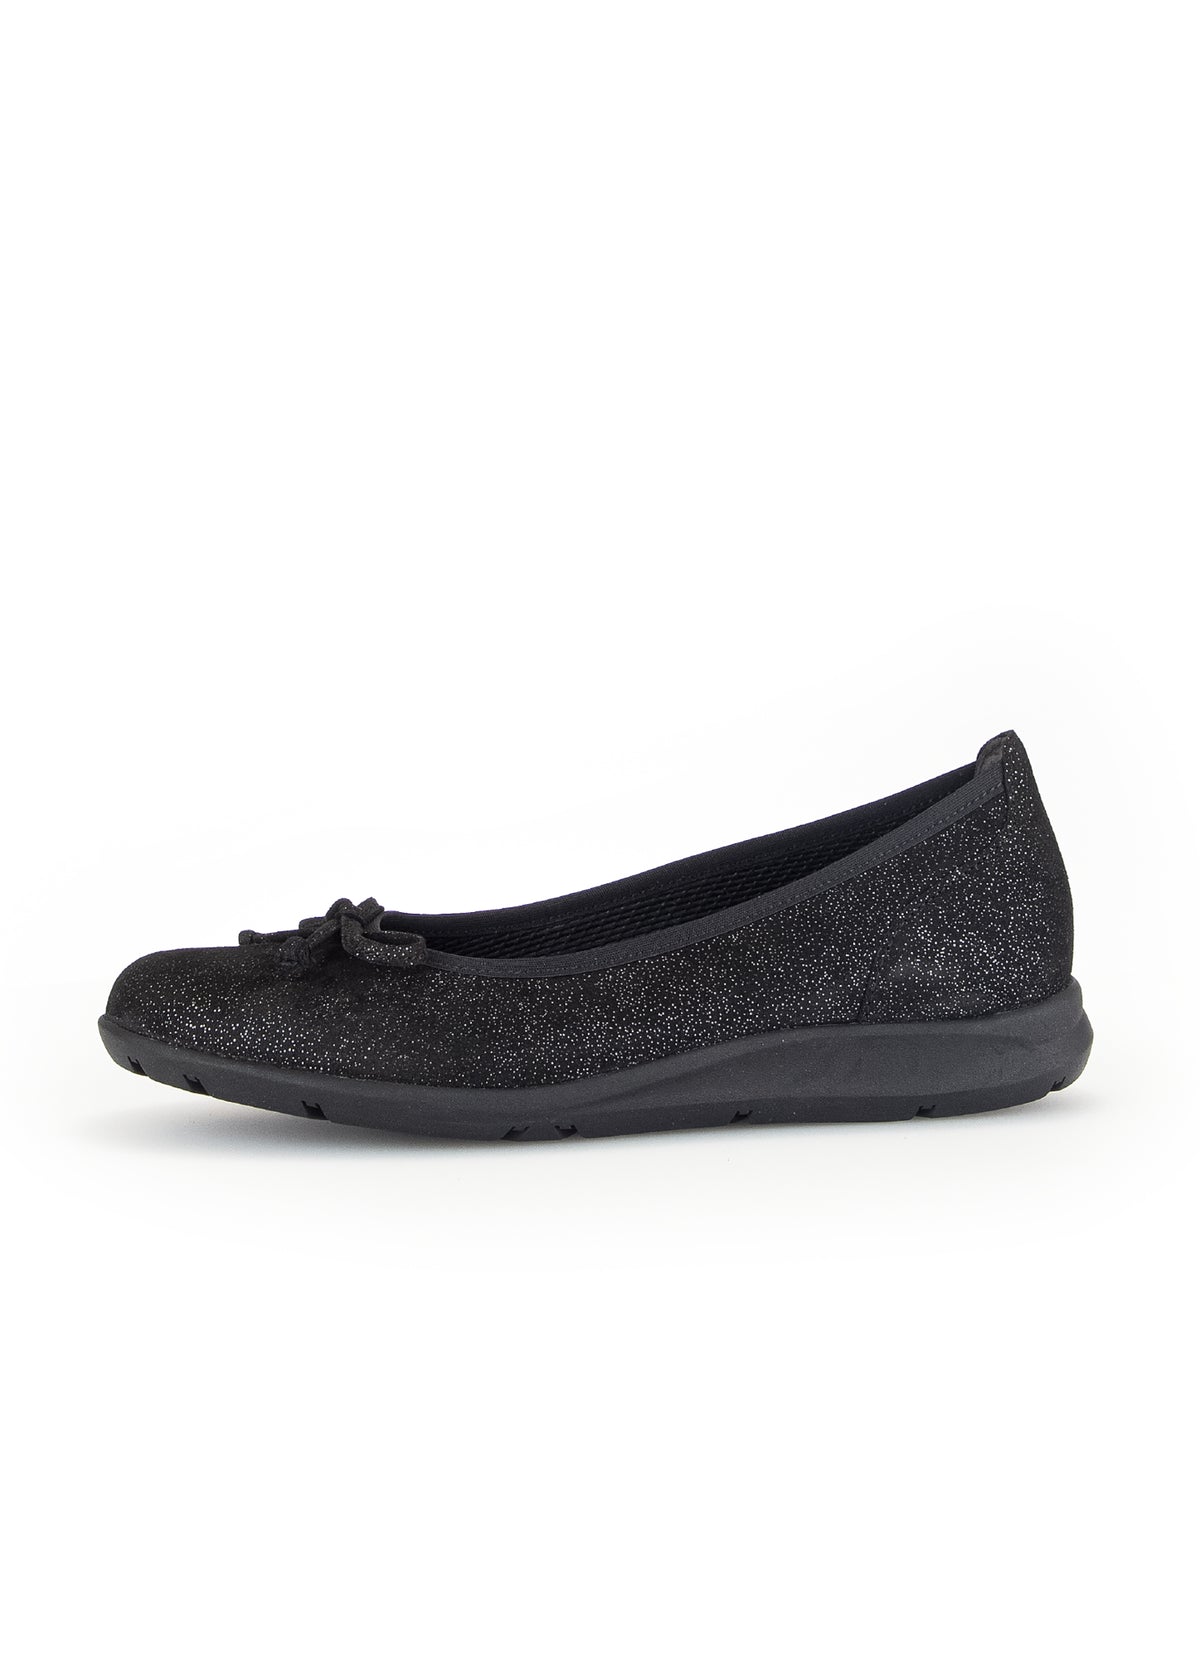 Bow ballerina skor - glänsande svart läder